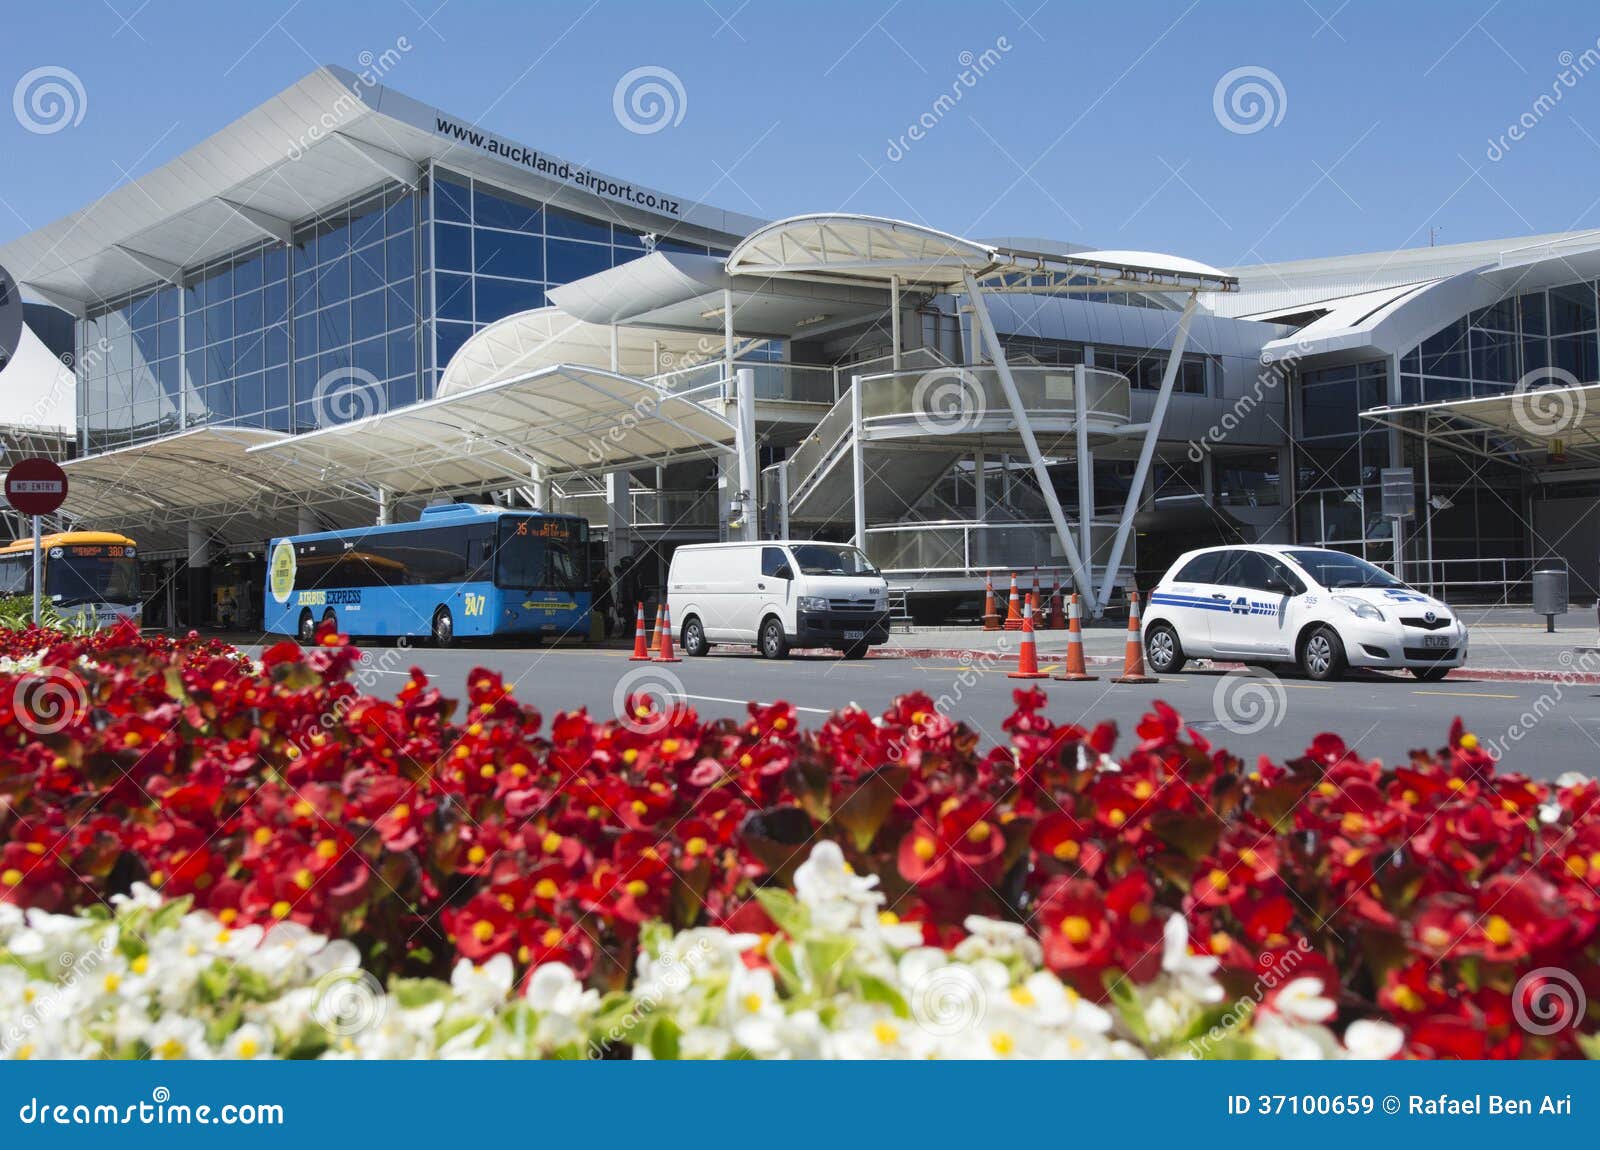 新西兰Te Hono新普利茅斯机场航站楼-Beca Design Practice-交通建筑案例-筑龙建筑设计论坛